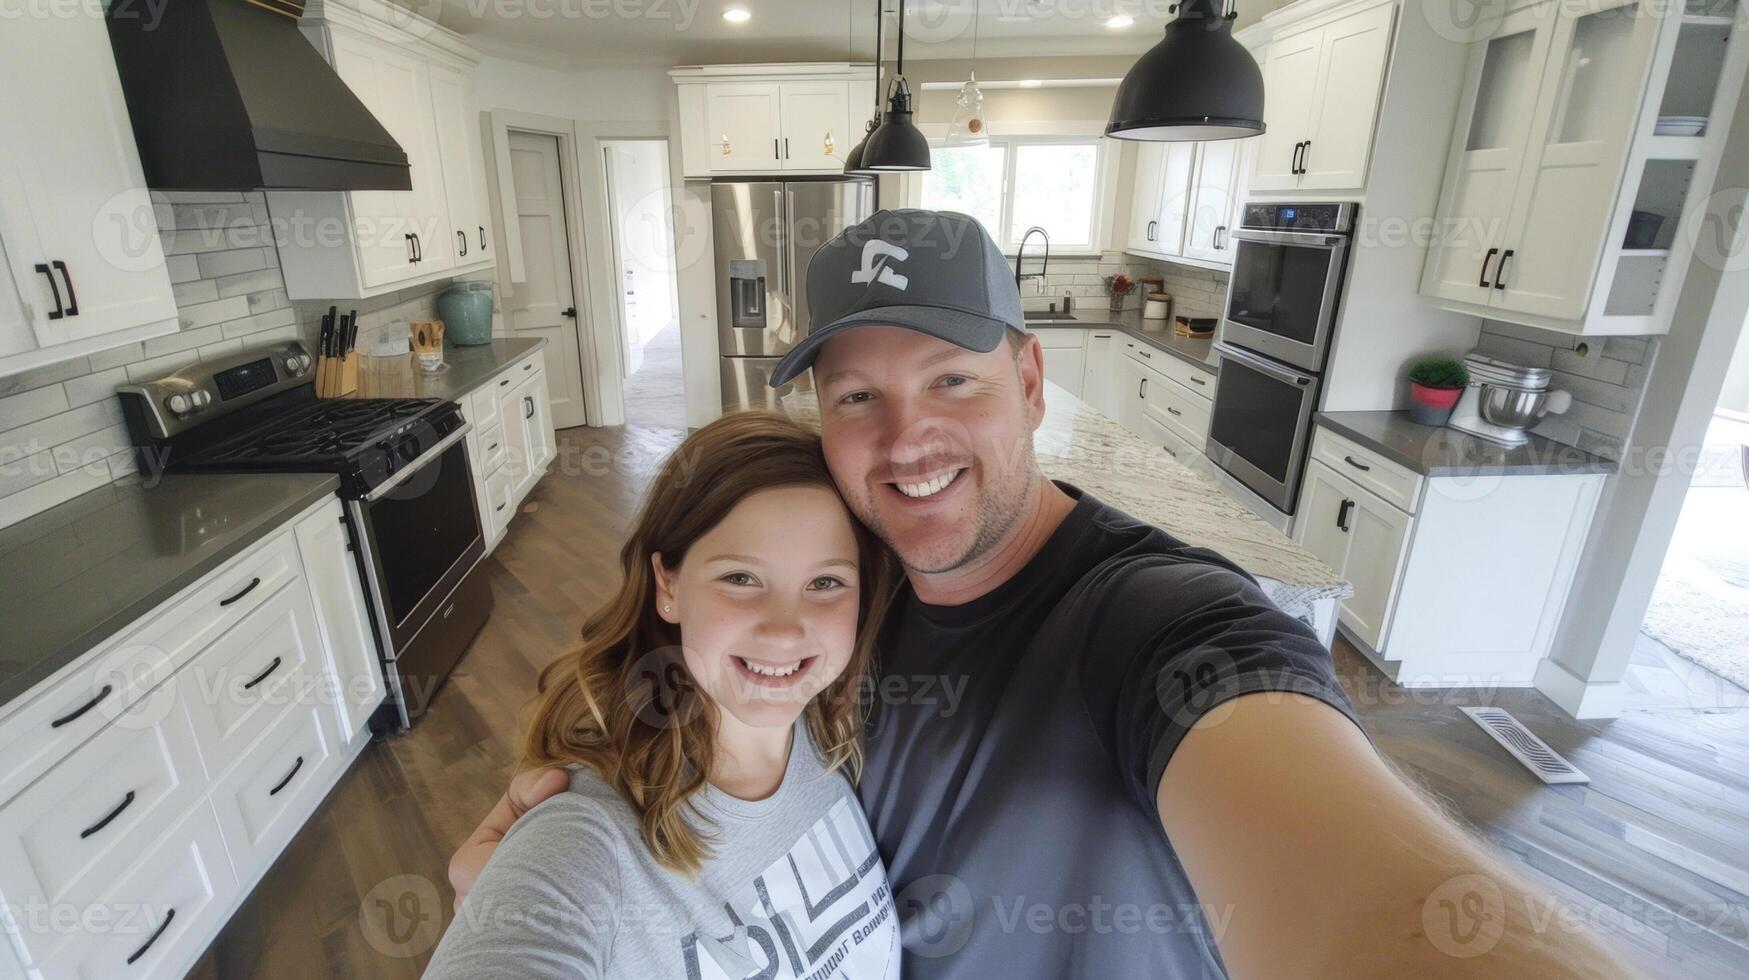 une famille sourit pour une selfie dans de face de leur nouvellement installée cuisine armoires une testament à le travail en équipe et l'amour cette amené leur vision à la vie photo